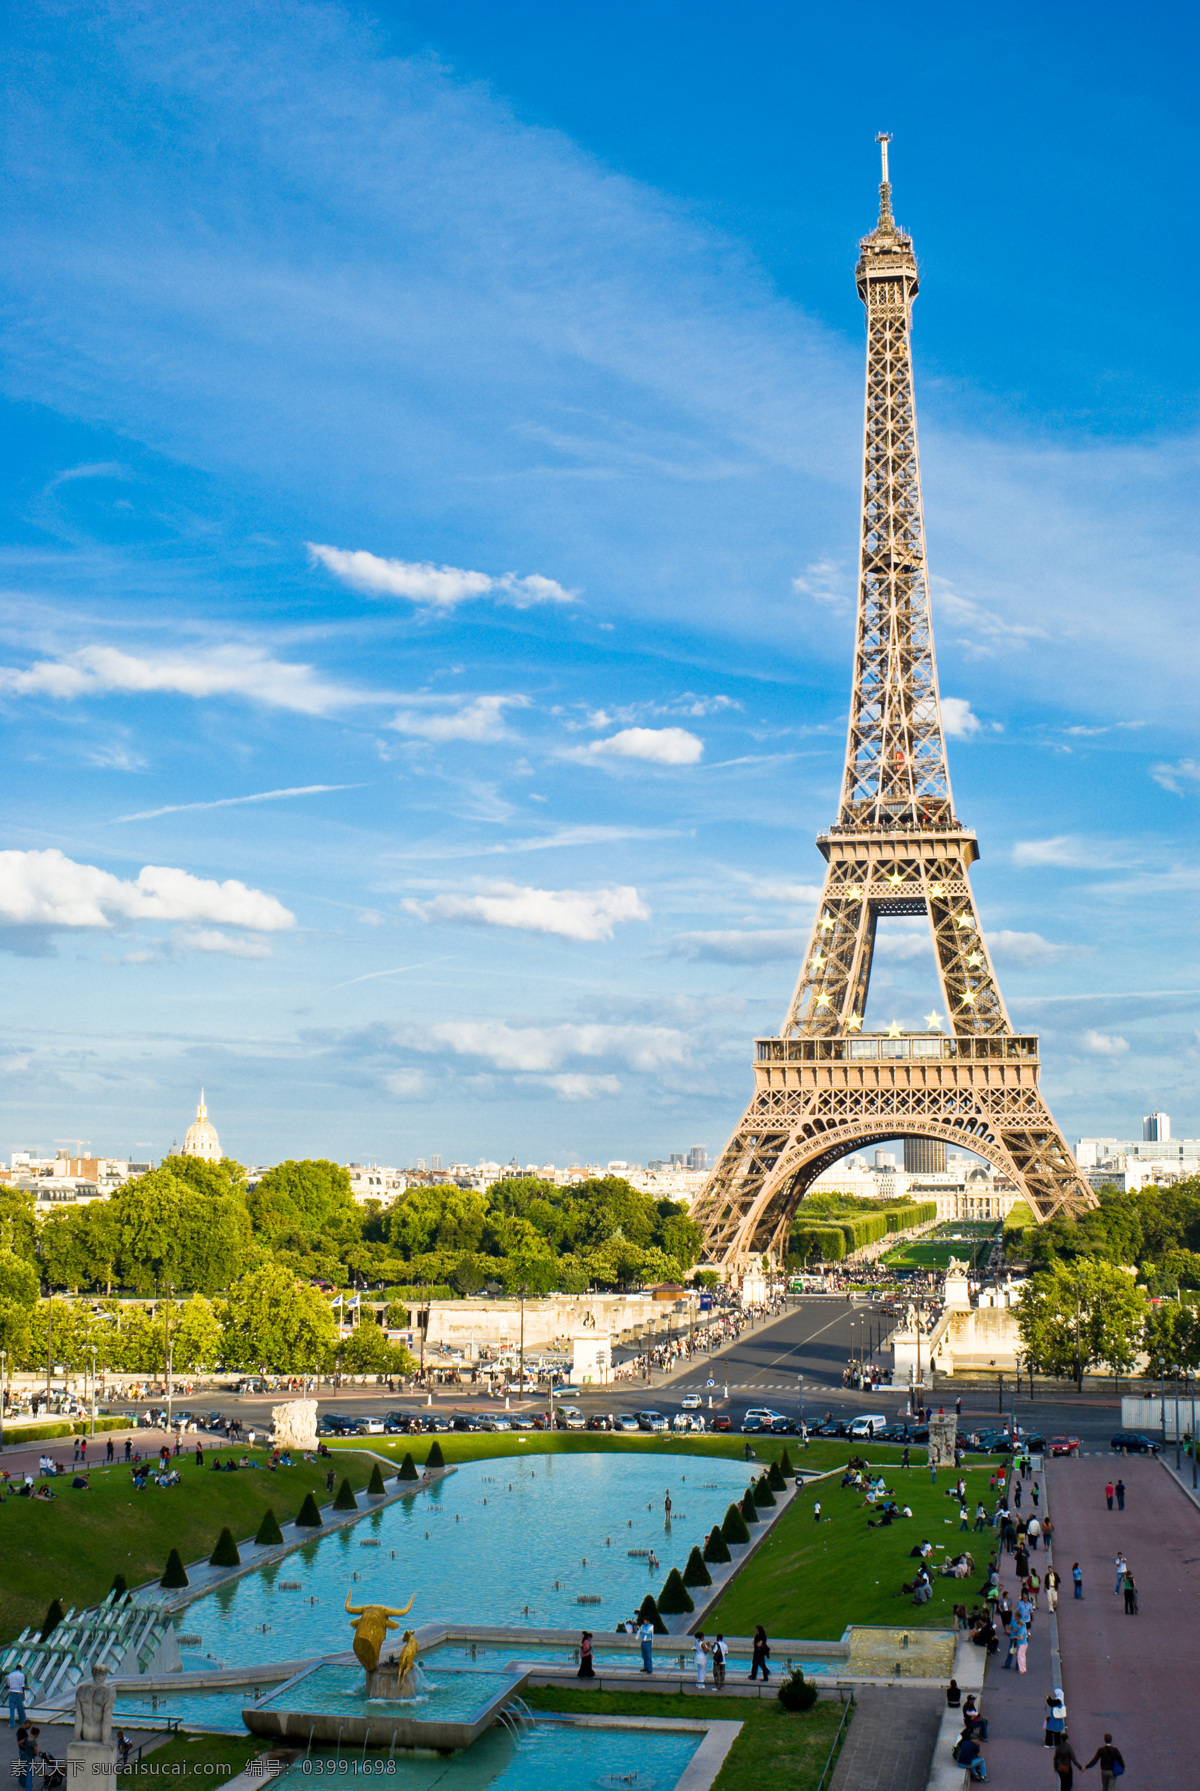 高清巴黎铁塔 巴黎铁塔 菲尔铁塔 法国铁塔 钢铁建筑 法国建筑 精美建筑 建筑园林 建筑摄影